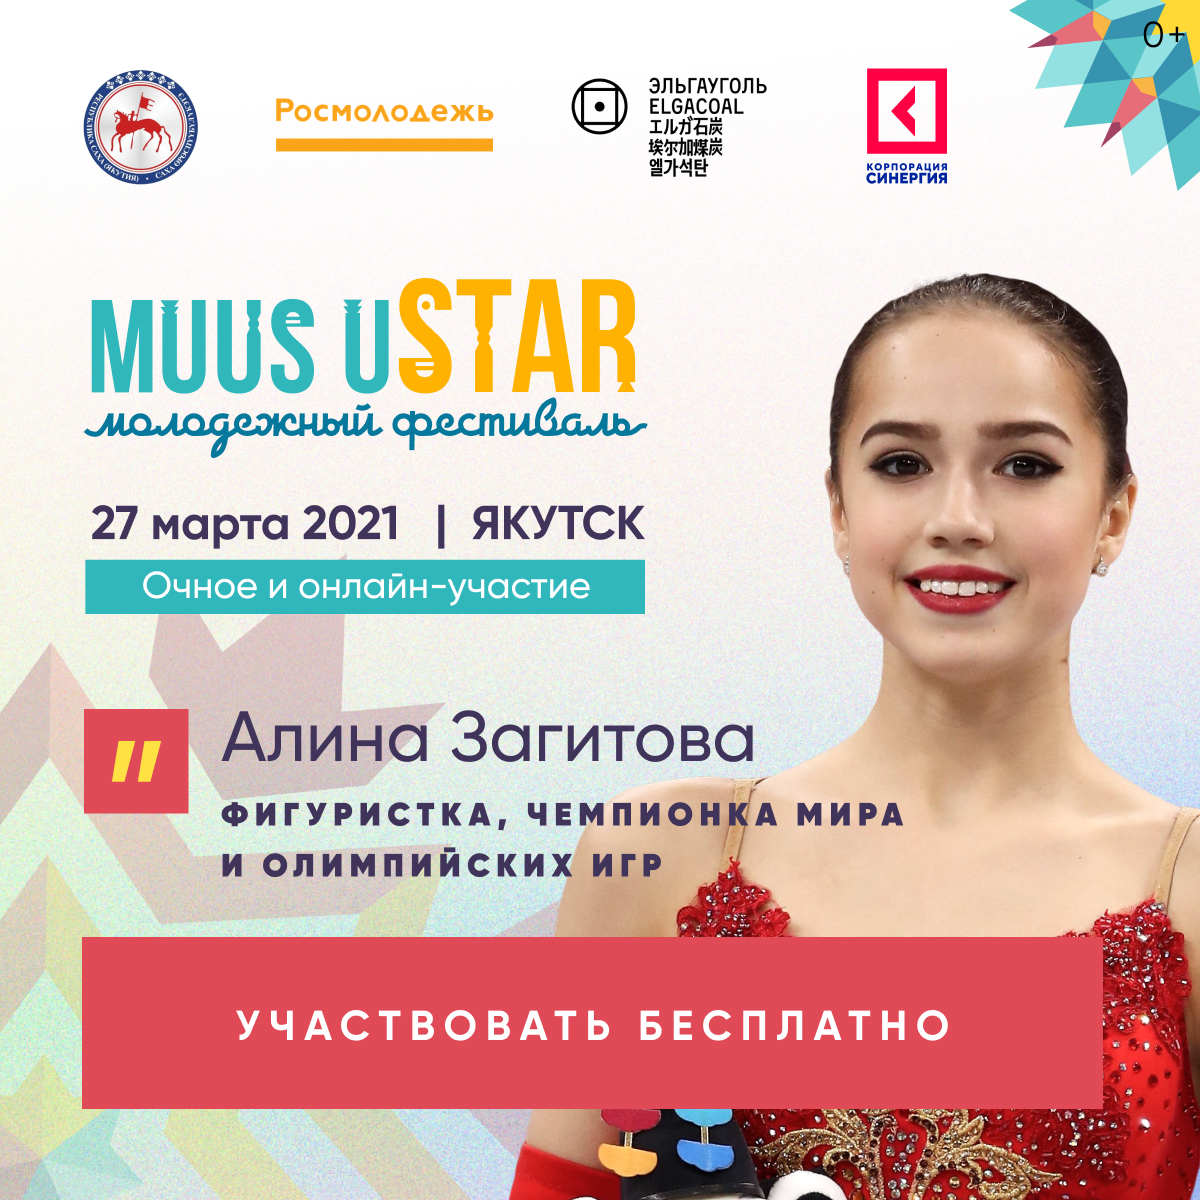 Алина Загитова призвала якутян участвовать в фестивале Muus uSTAR